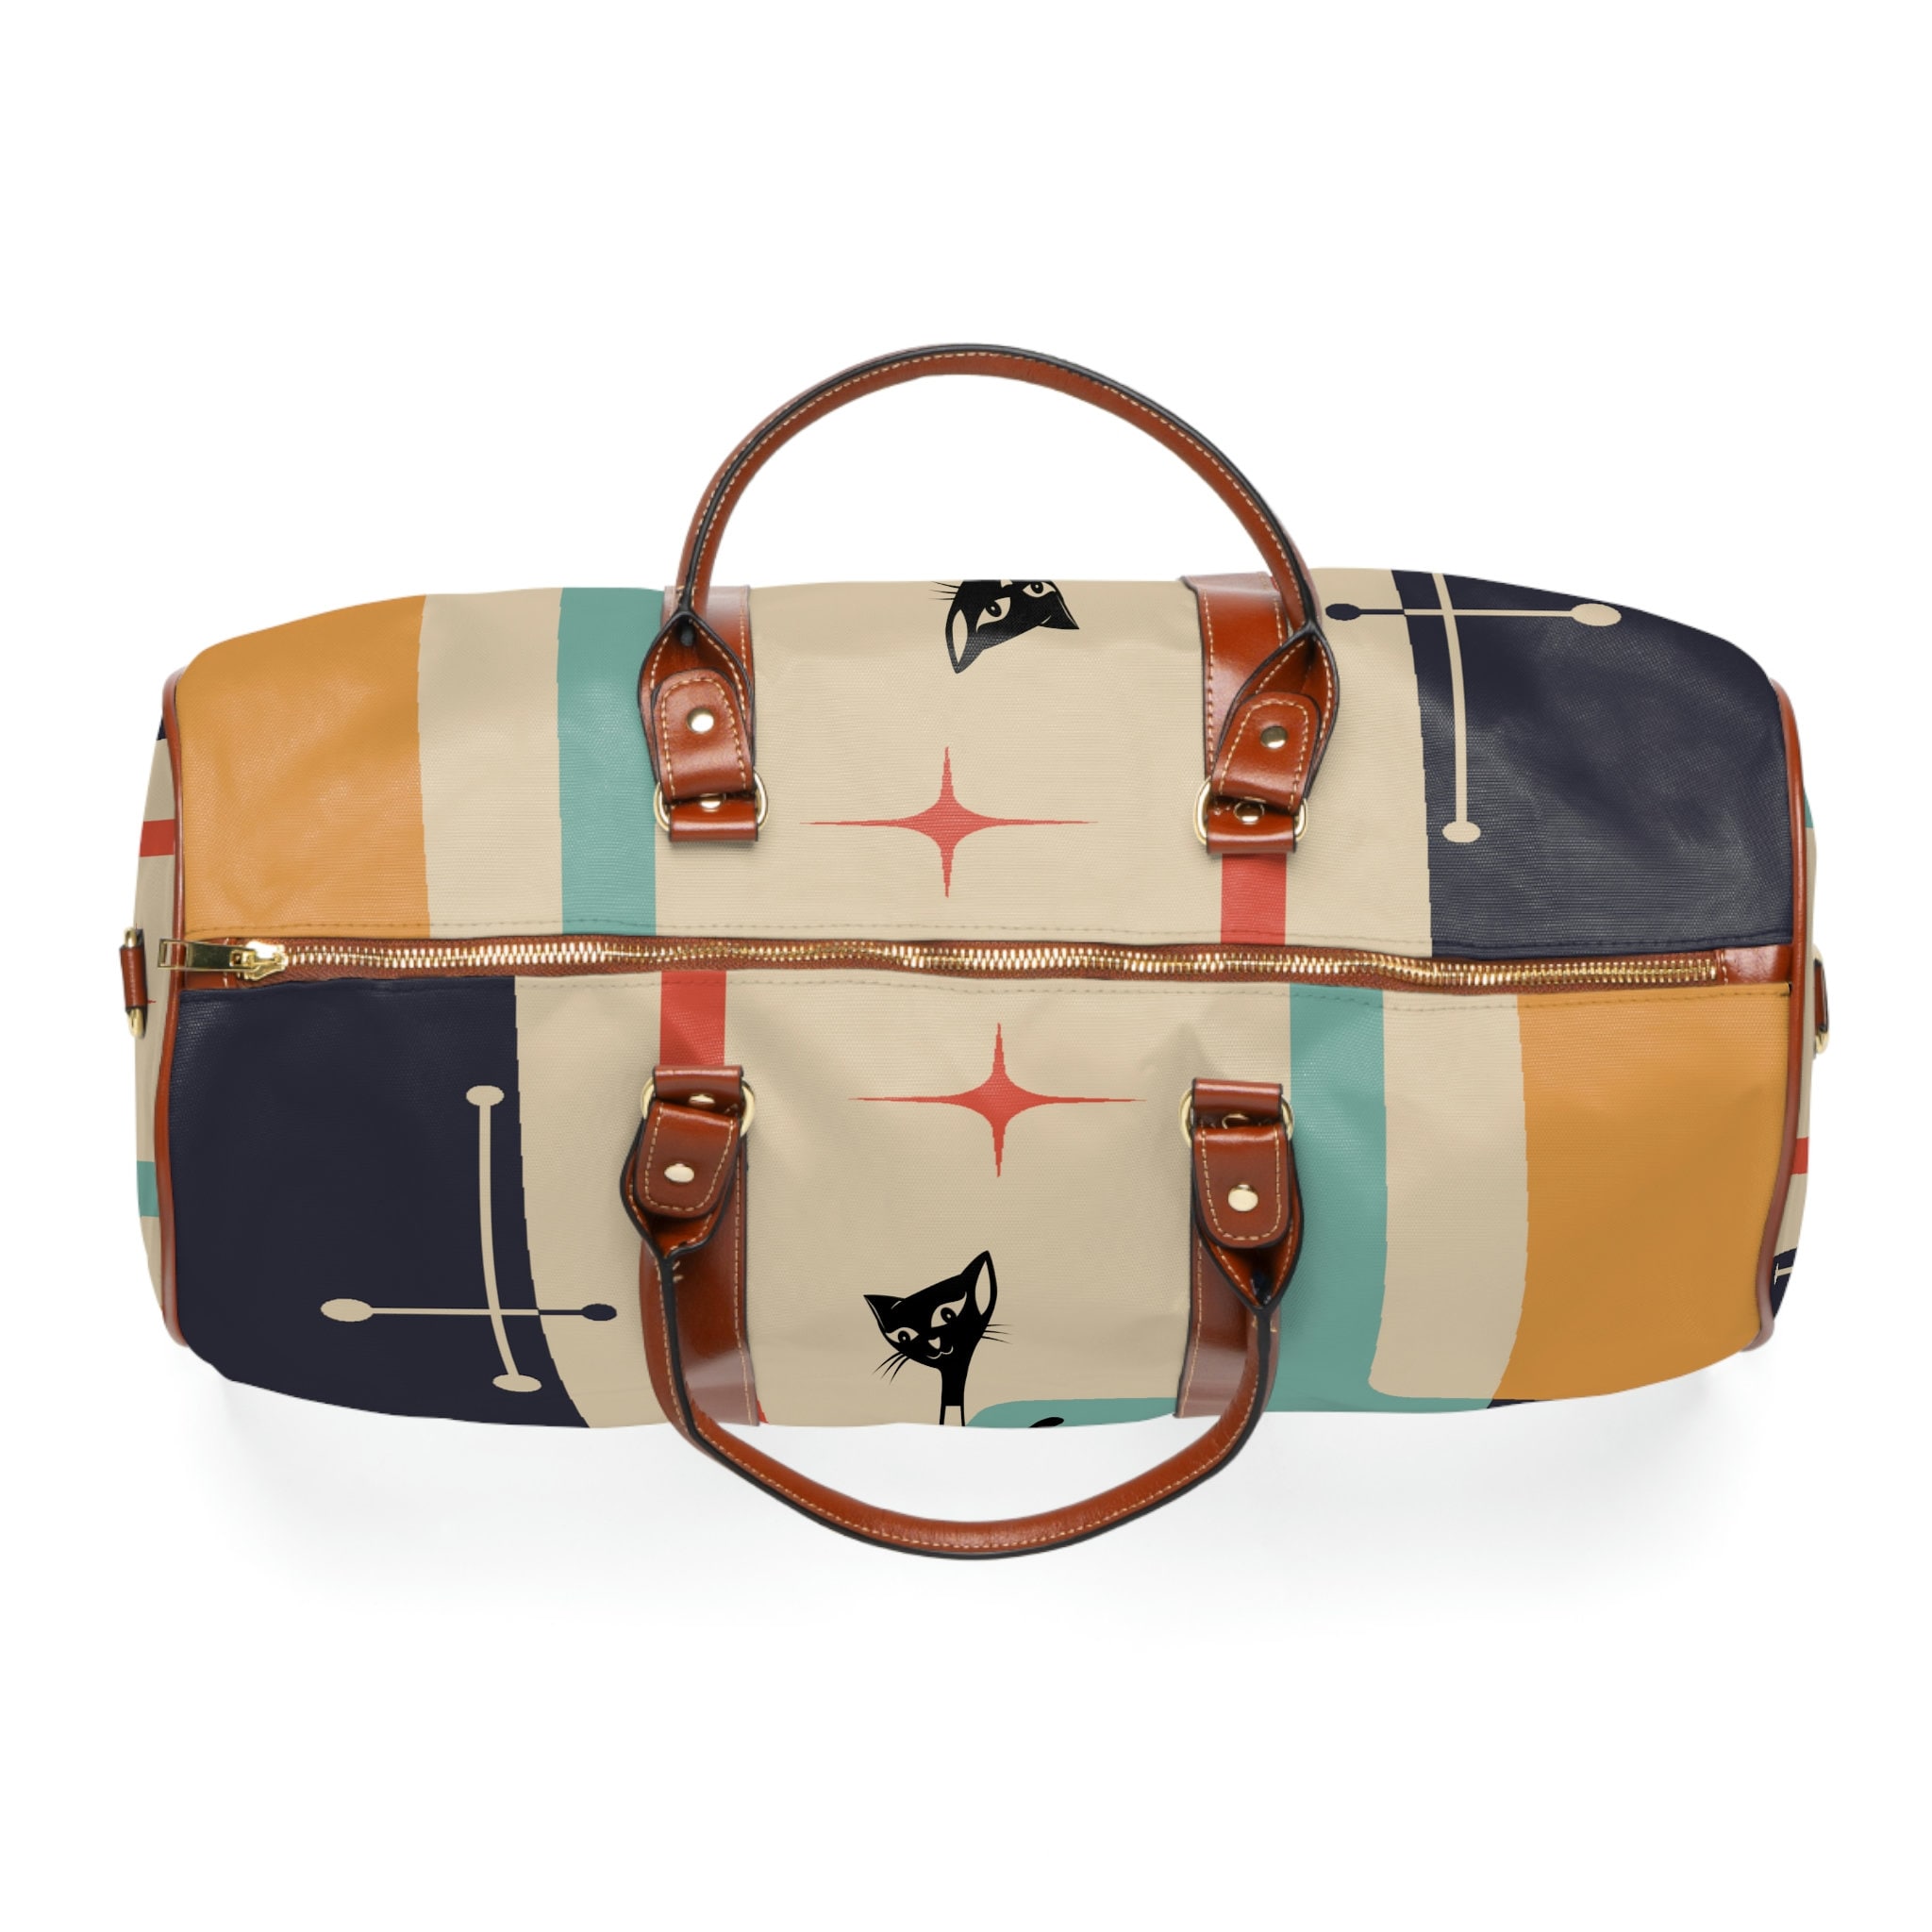 Atomic Cat, Mid Century Modern, Luggage, Travel Bag, Weekender, Retro